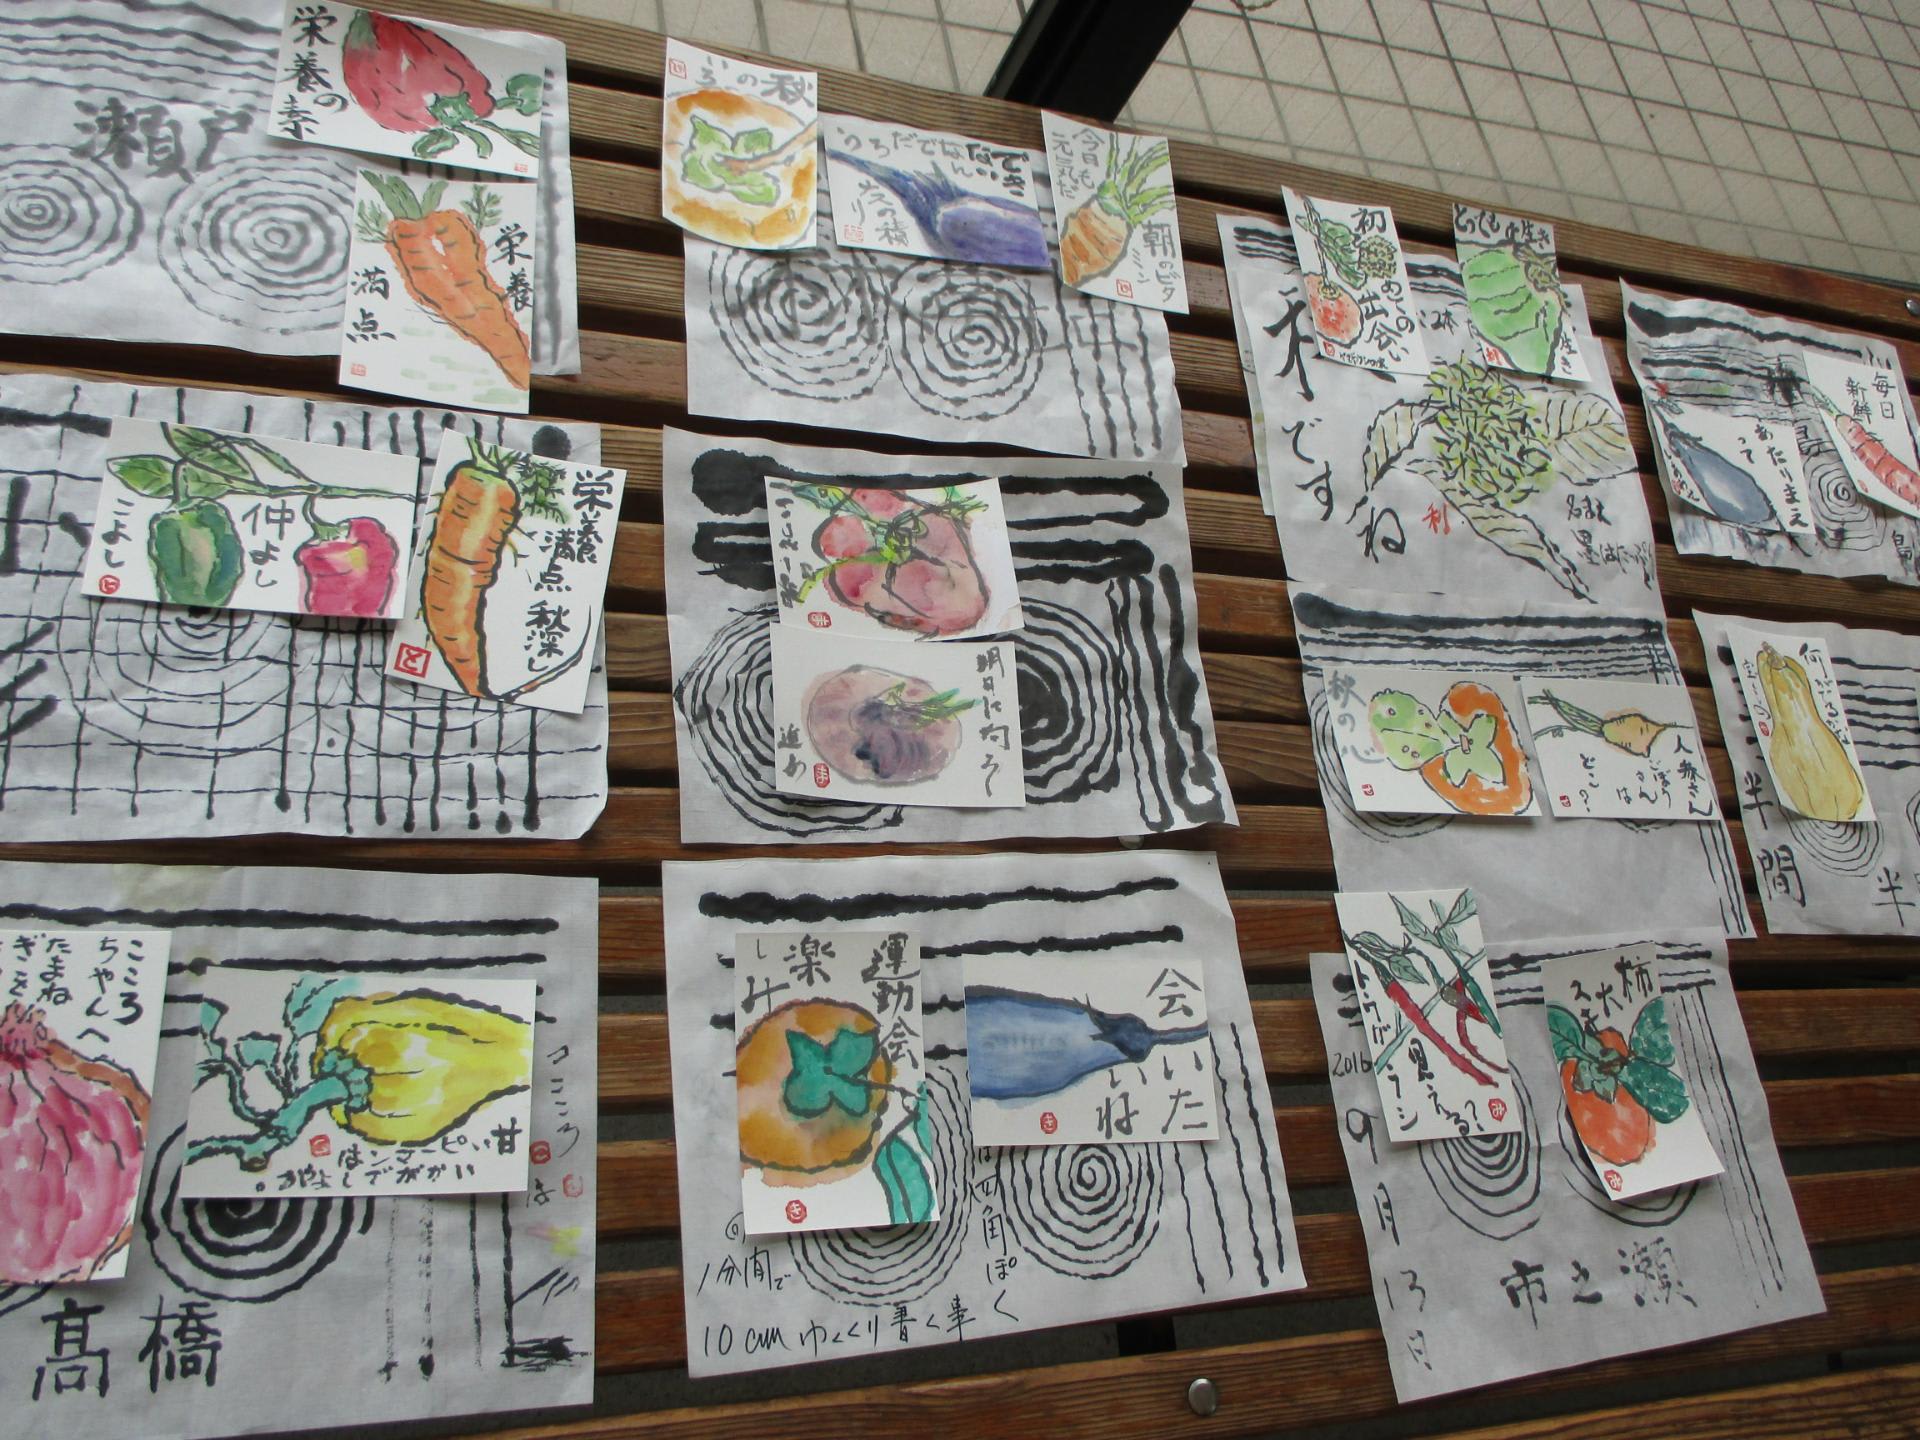 絵手紙教室で・・・ 北本総合公園公式ブログ